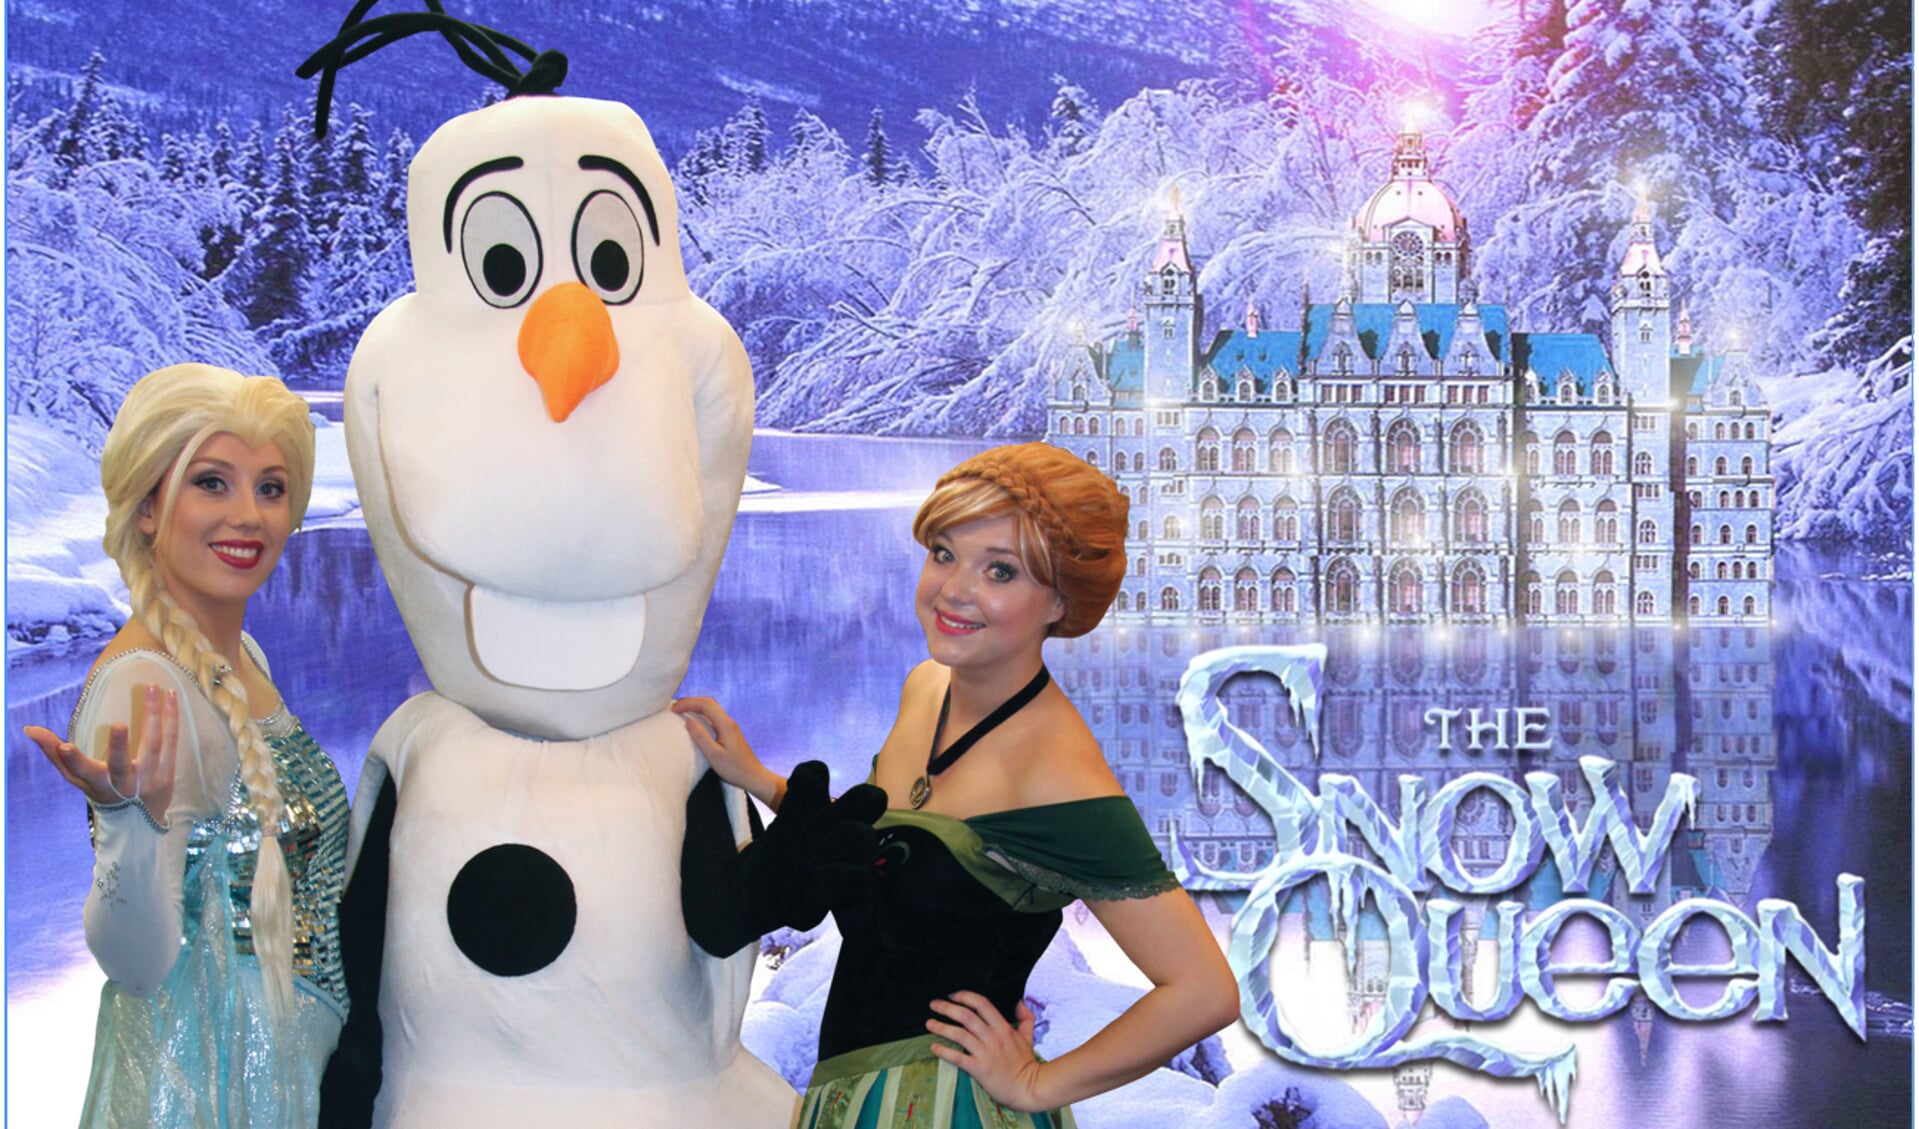 Op zaterdag 19 december zijn Olaf en de prinsessen Anna en Elsa in het Winkelhart